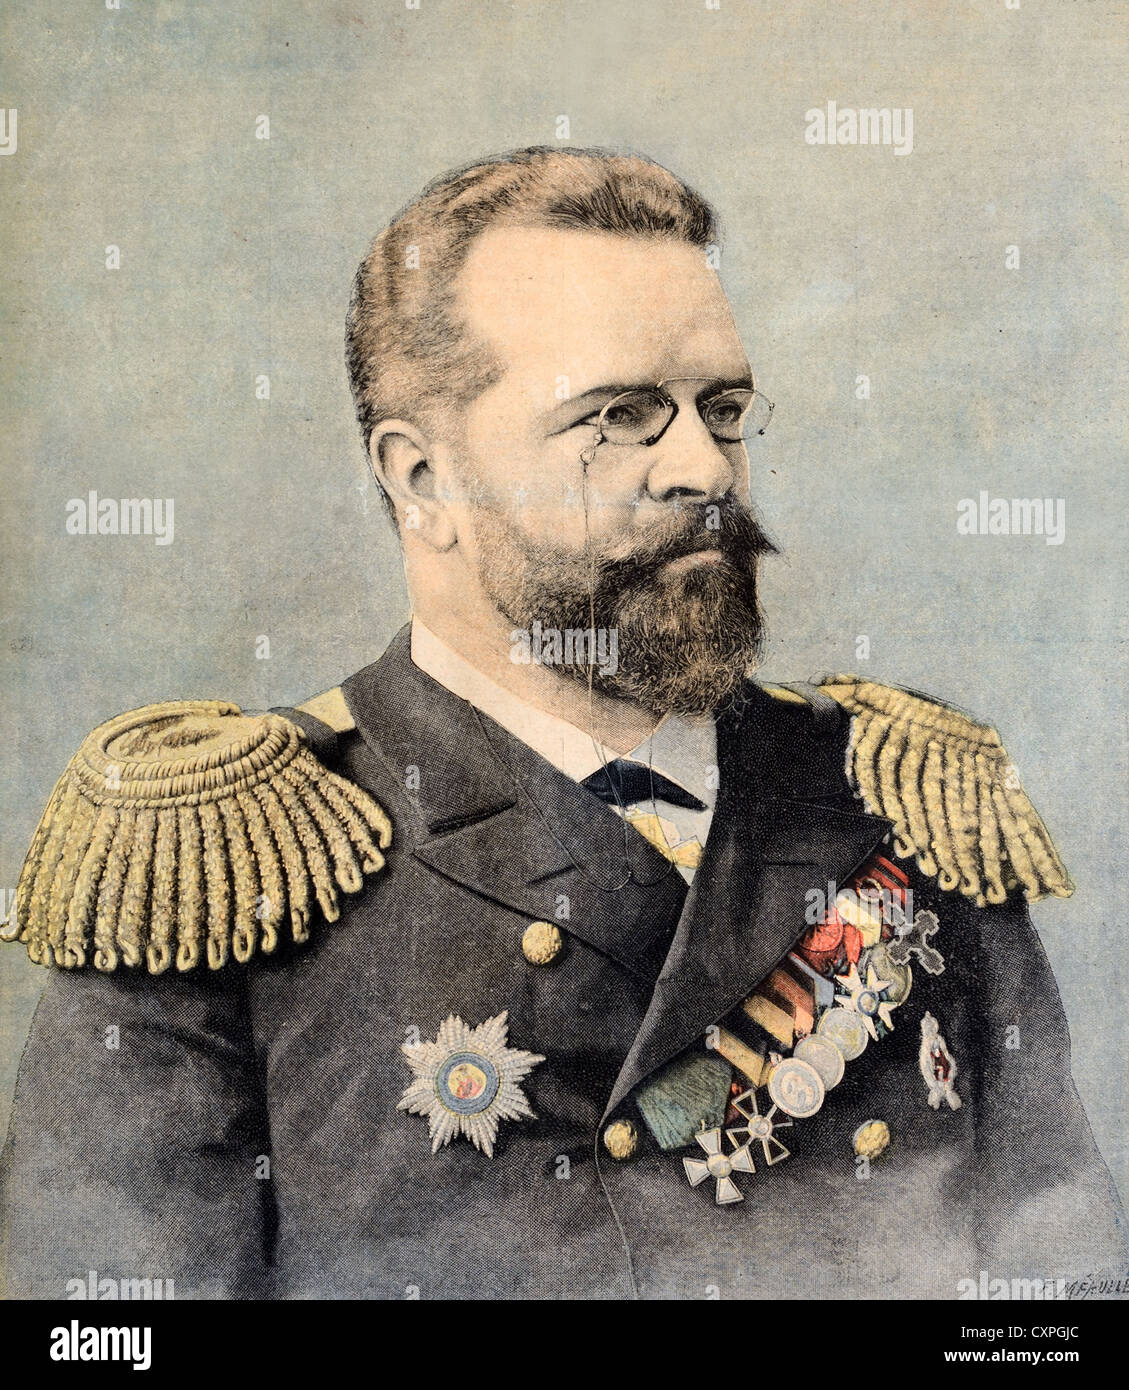 Porträt von Nicolai Skrydlow (1844-1918) Russischer Admiral in der kaiserlichen russischen Marine. Vintage Illustration oder Gravur Stockfoto